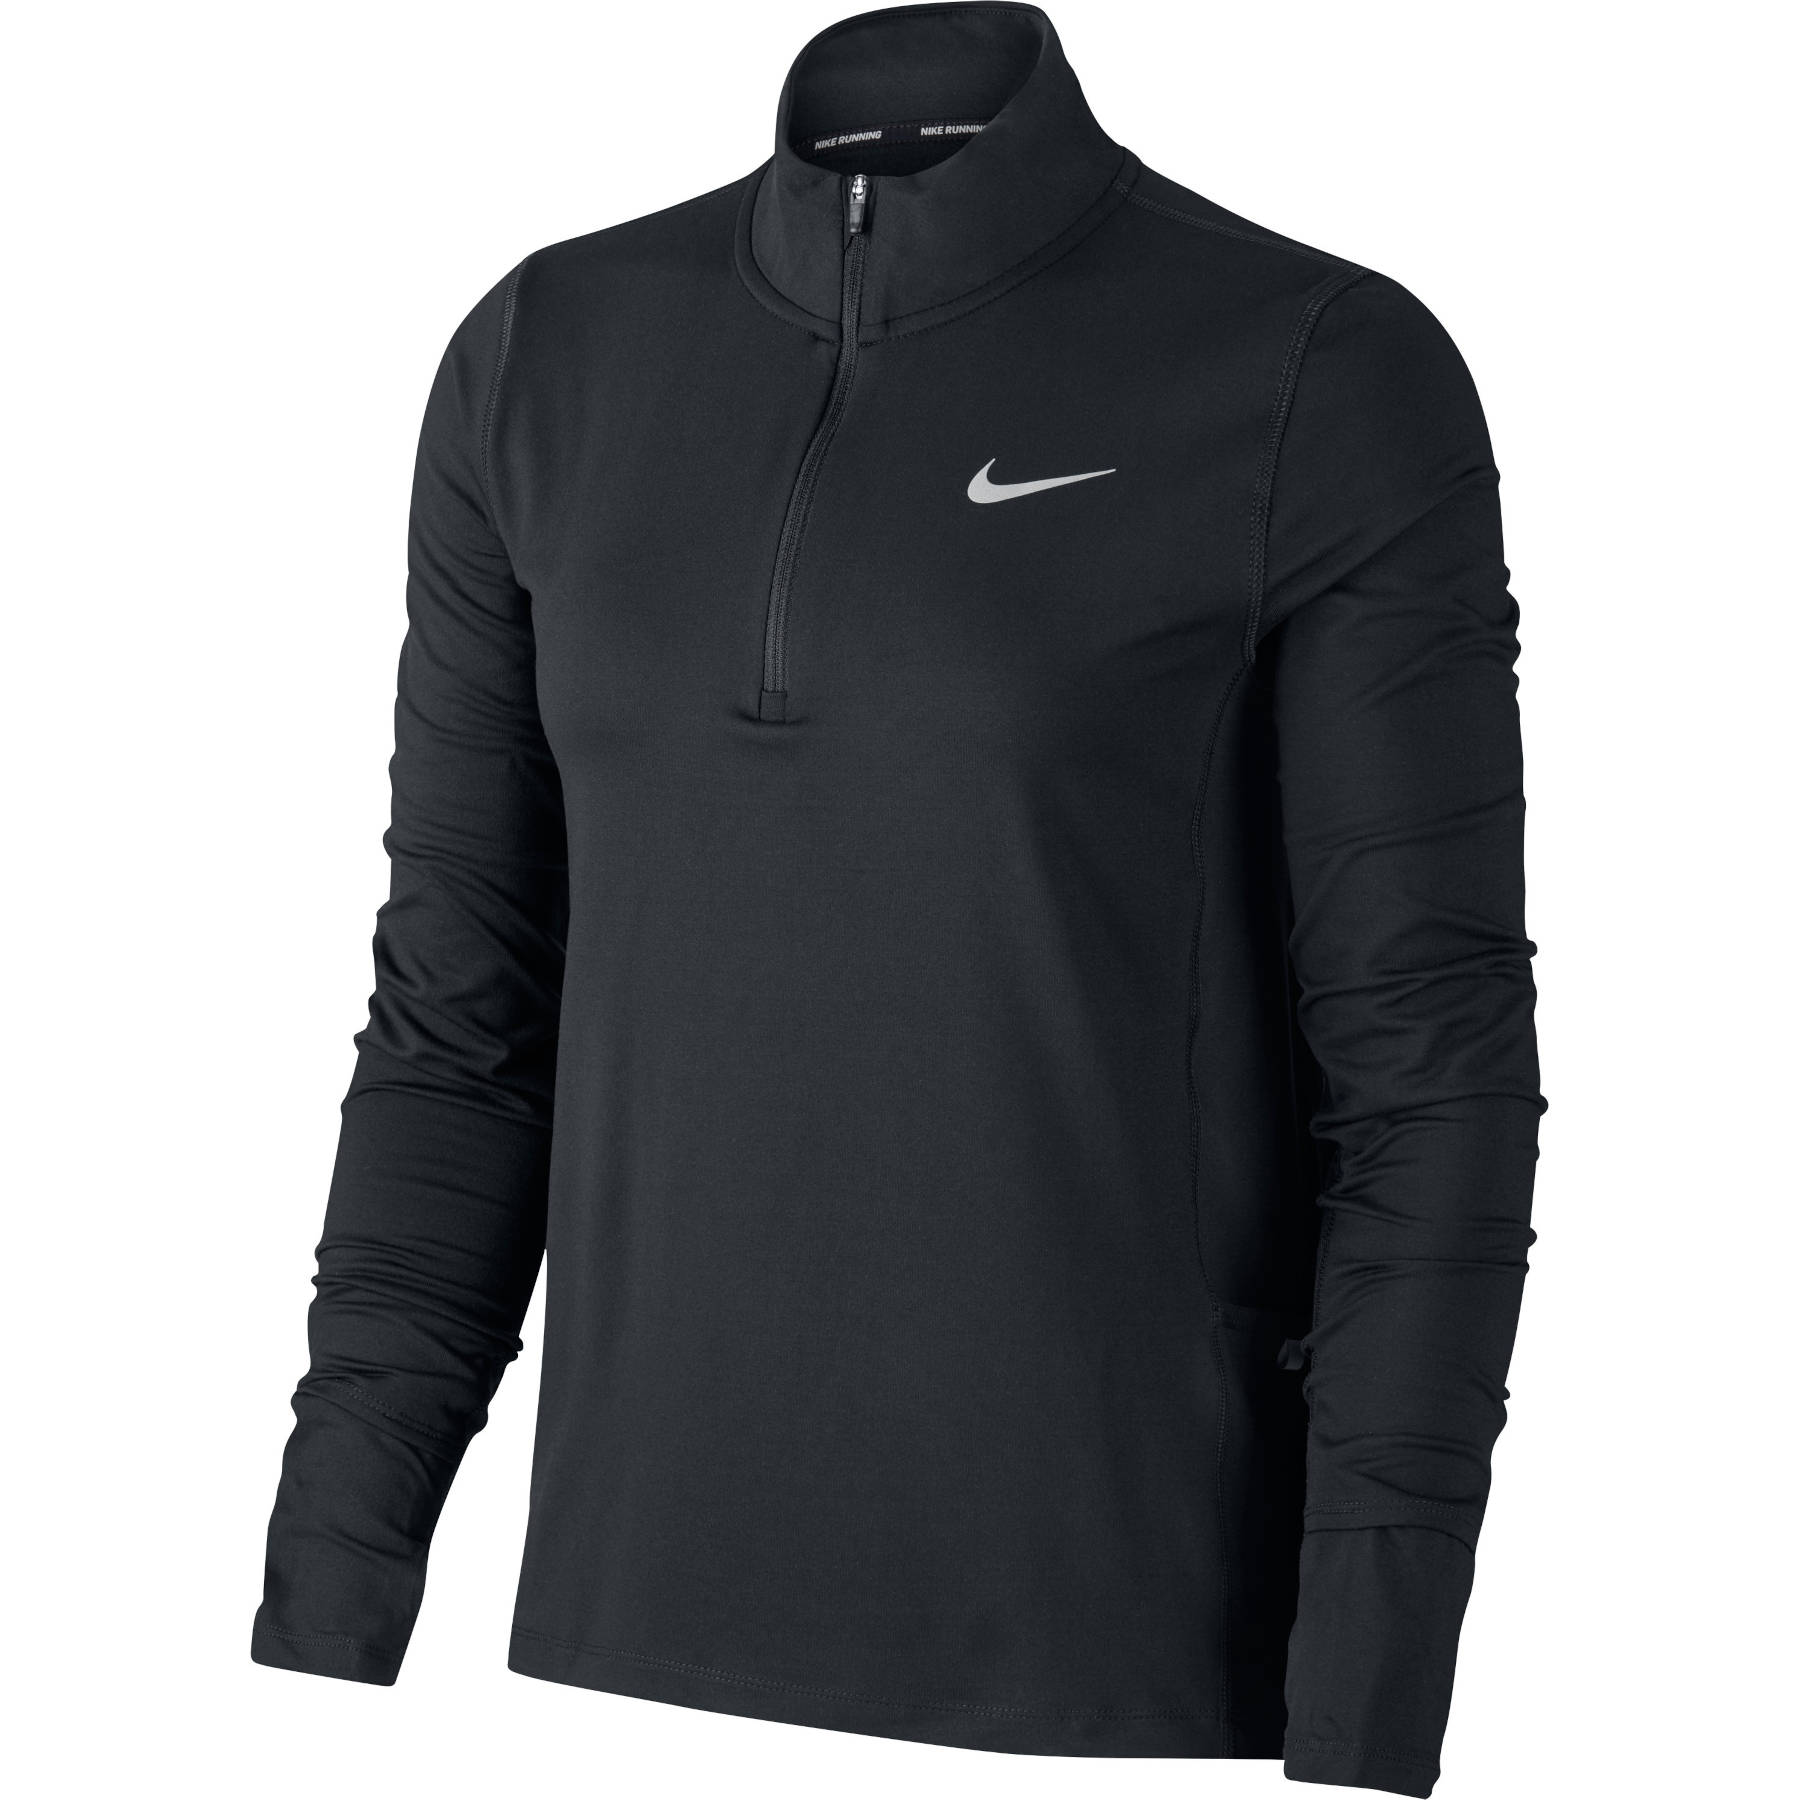 Productfoto van Nike T-Shirt met lange Mouwen en 1/2 ritssluiting Dames - black/reflectivity CU3220-010